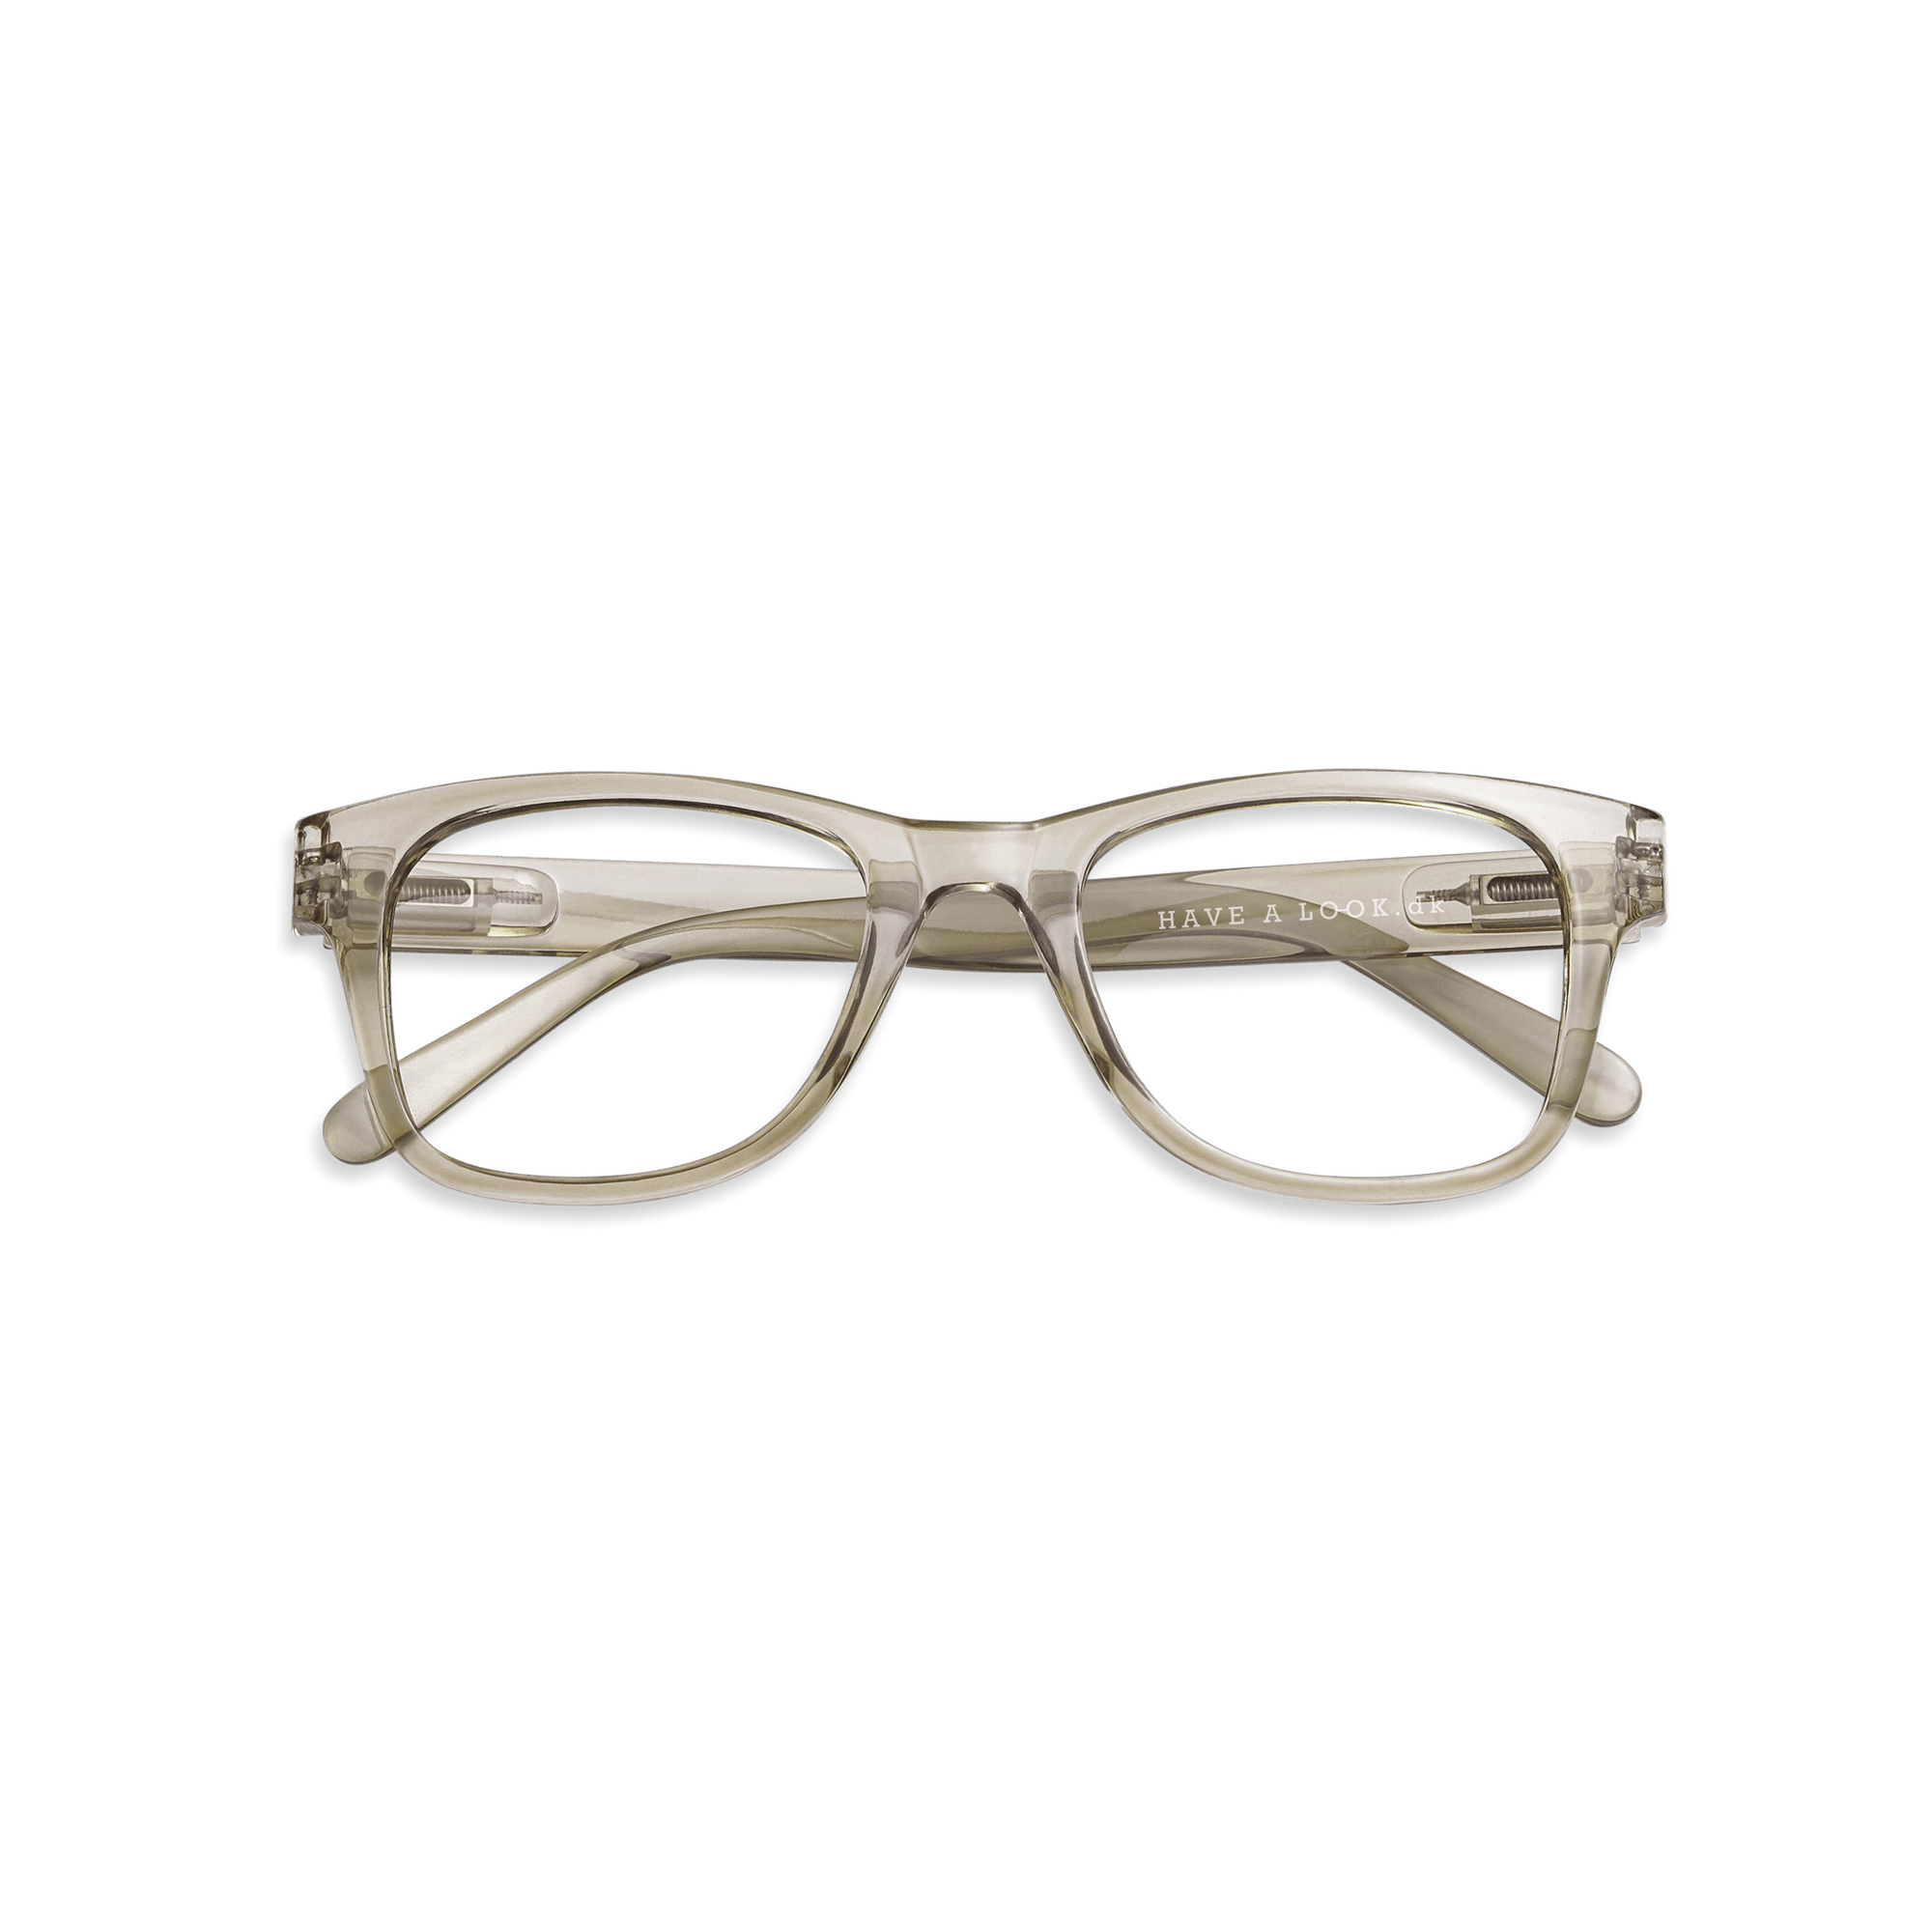 Læsebriller Type B - olive